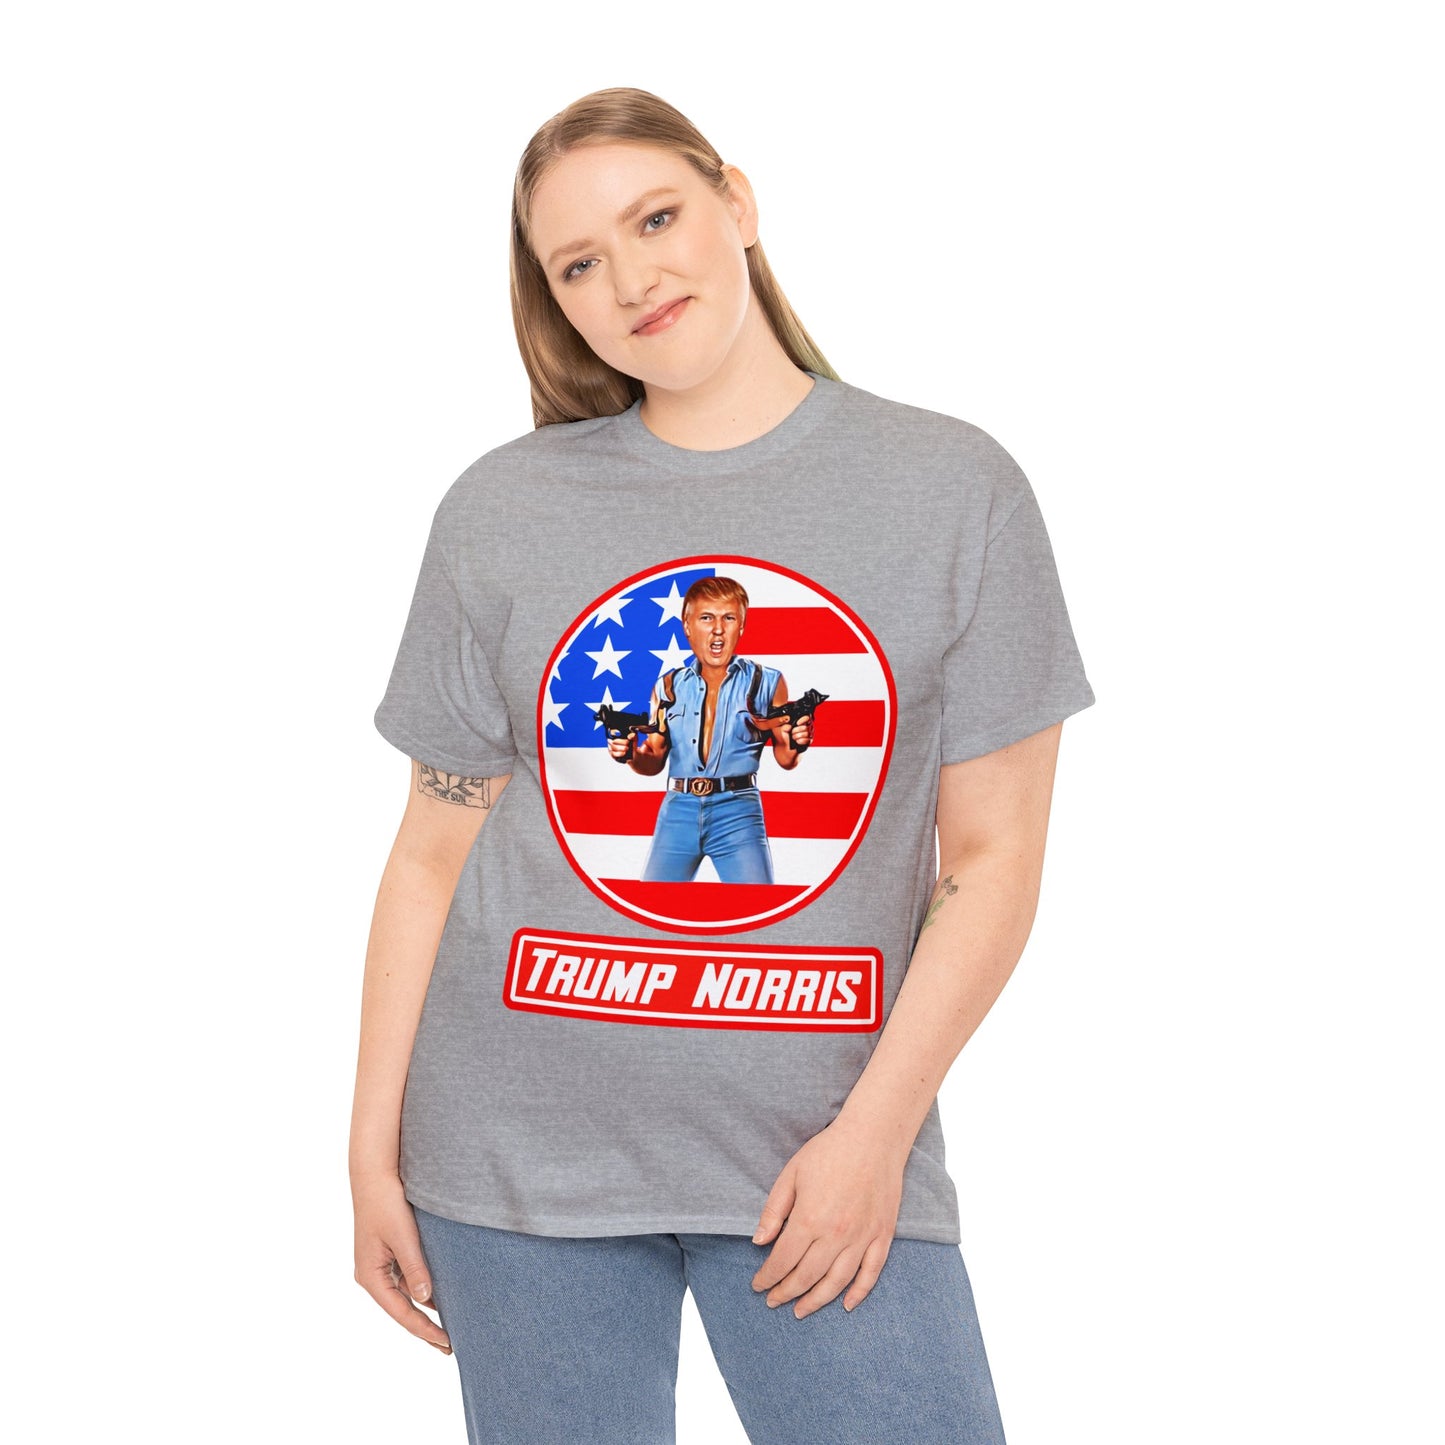 Trump Norris Shirt